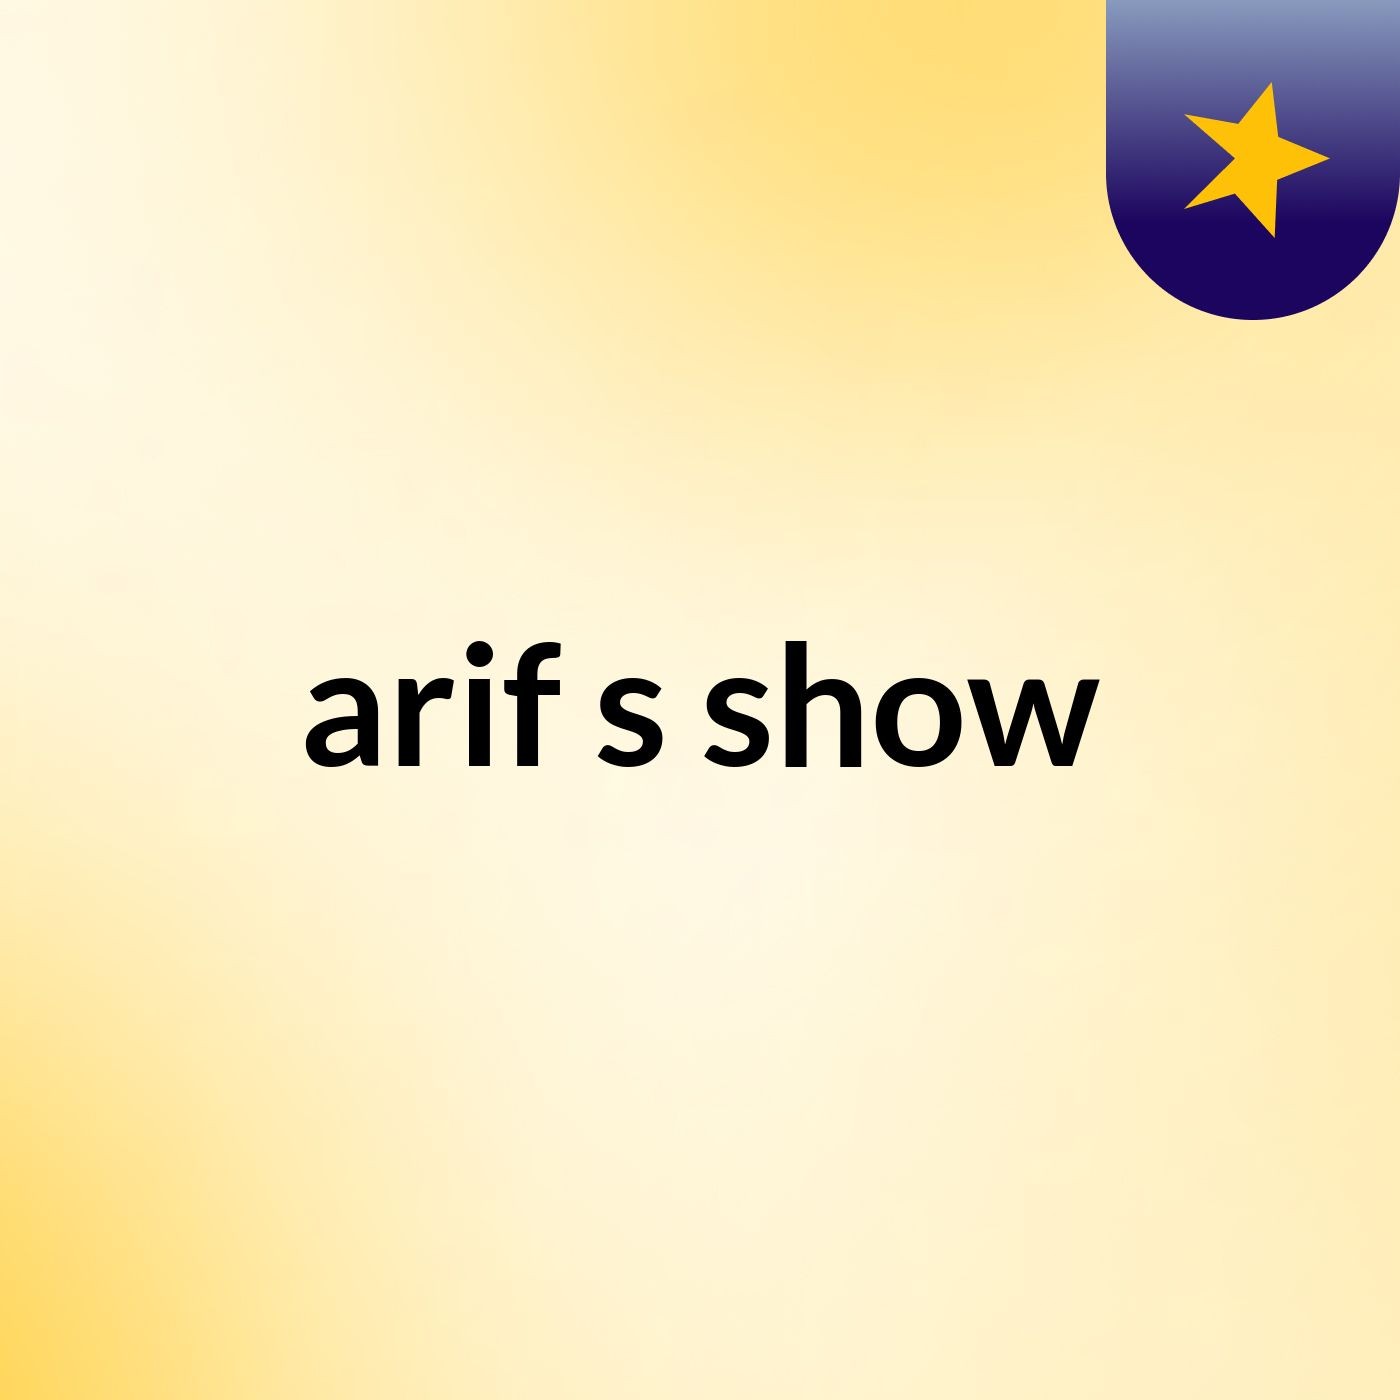 arif's show